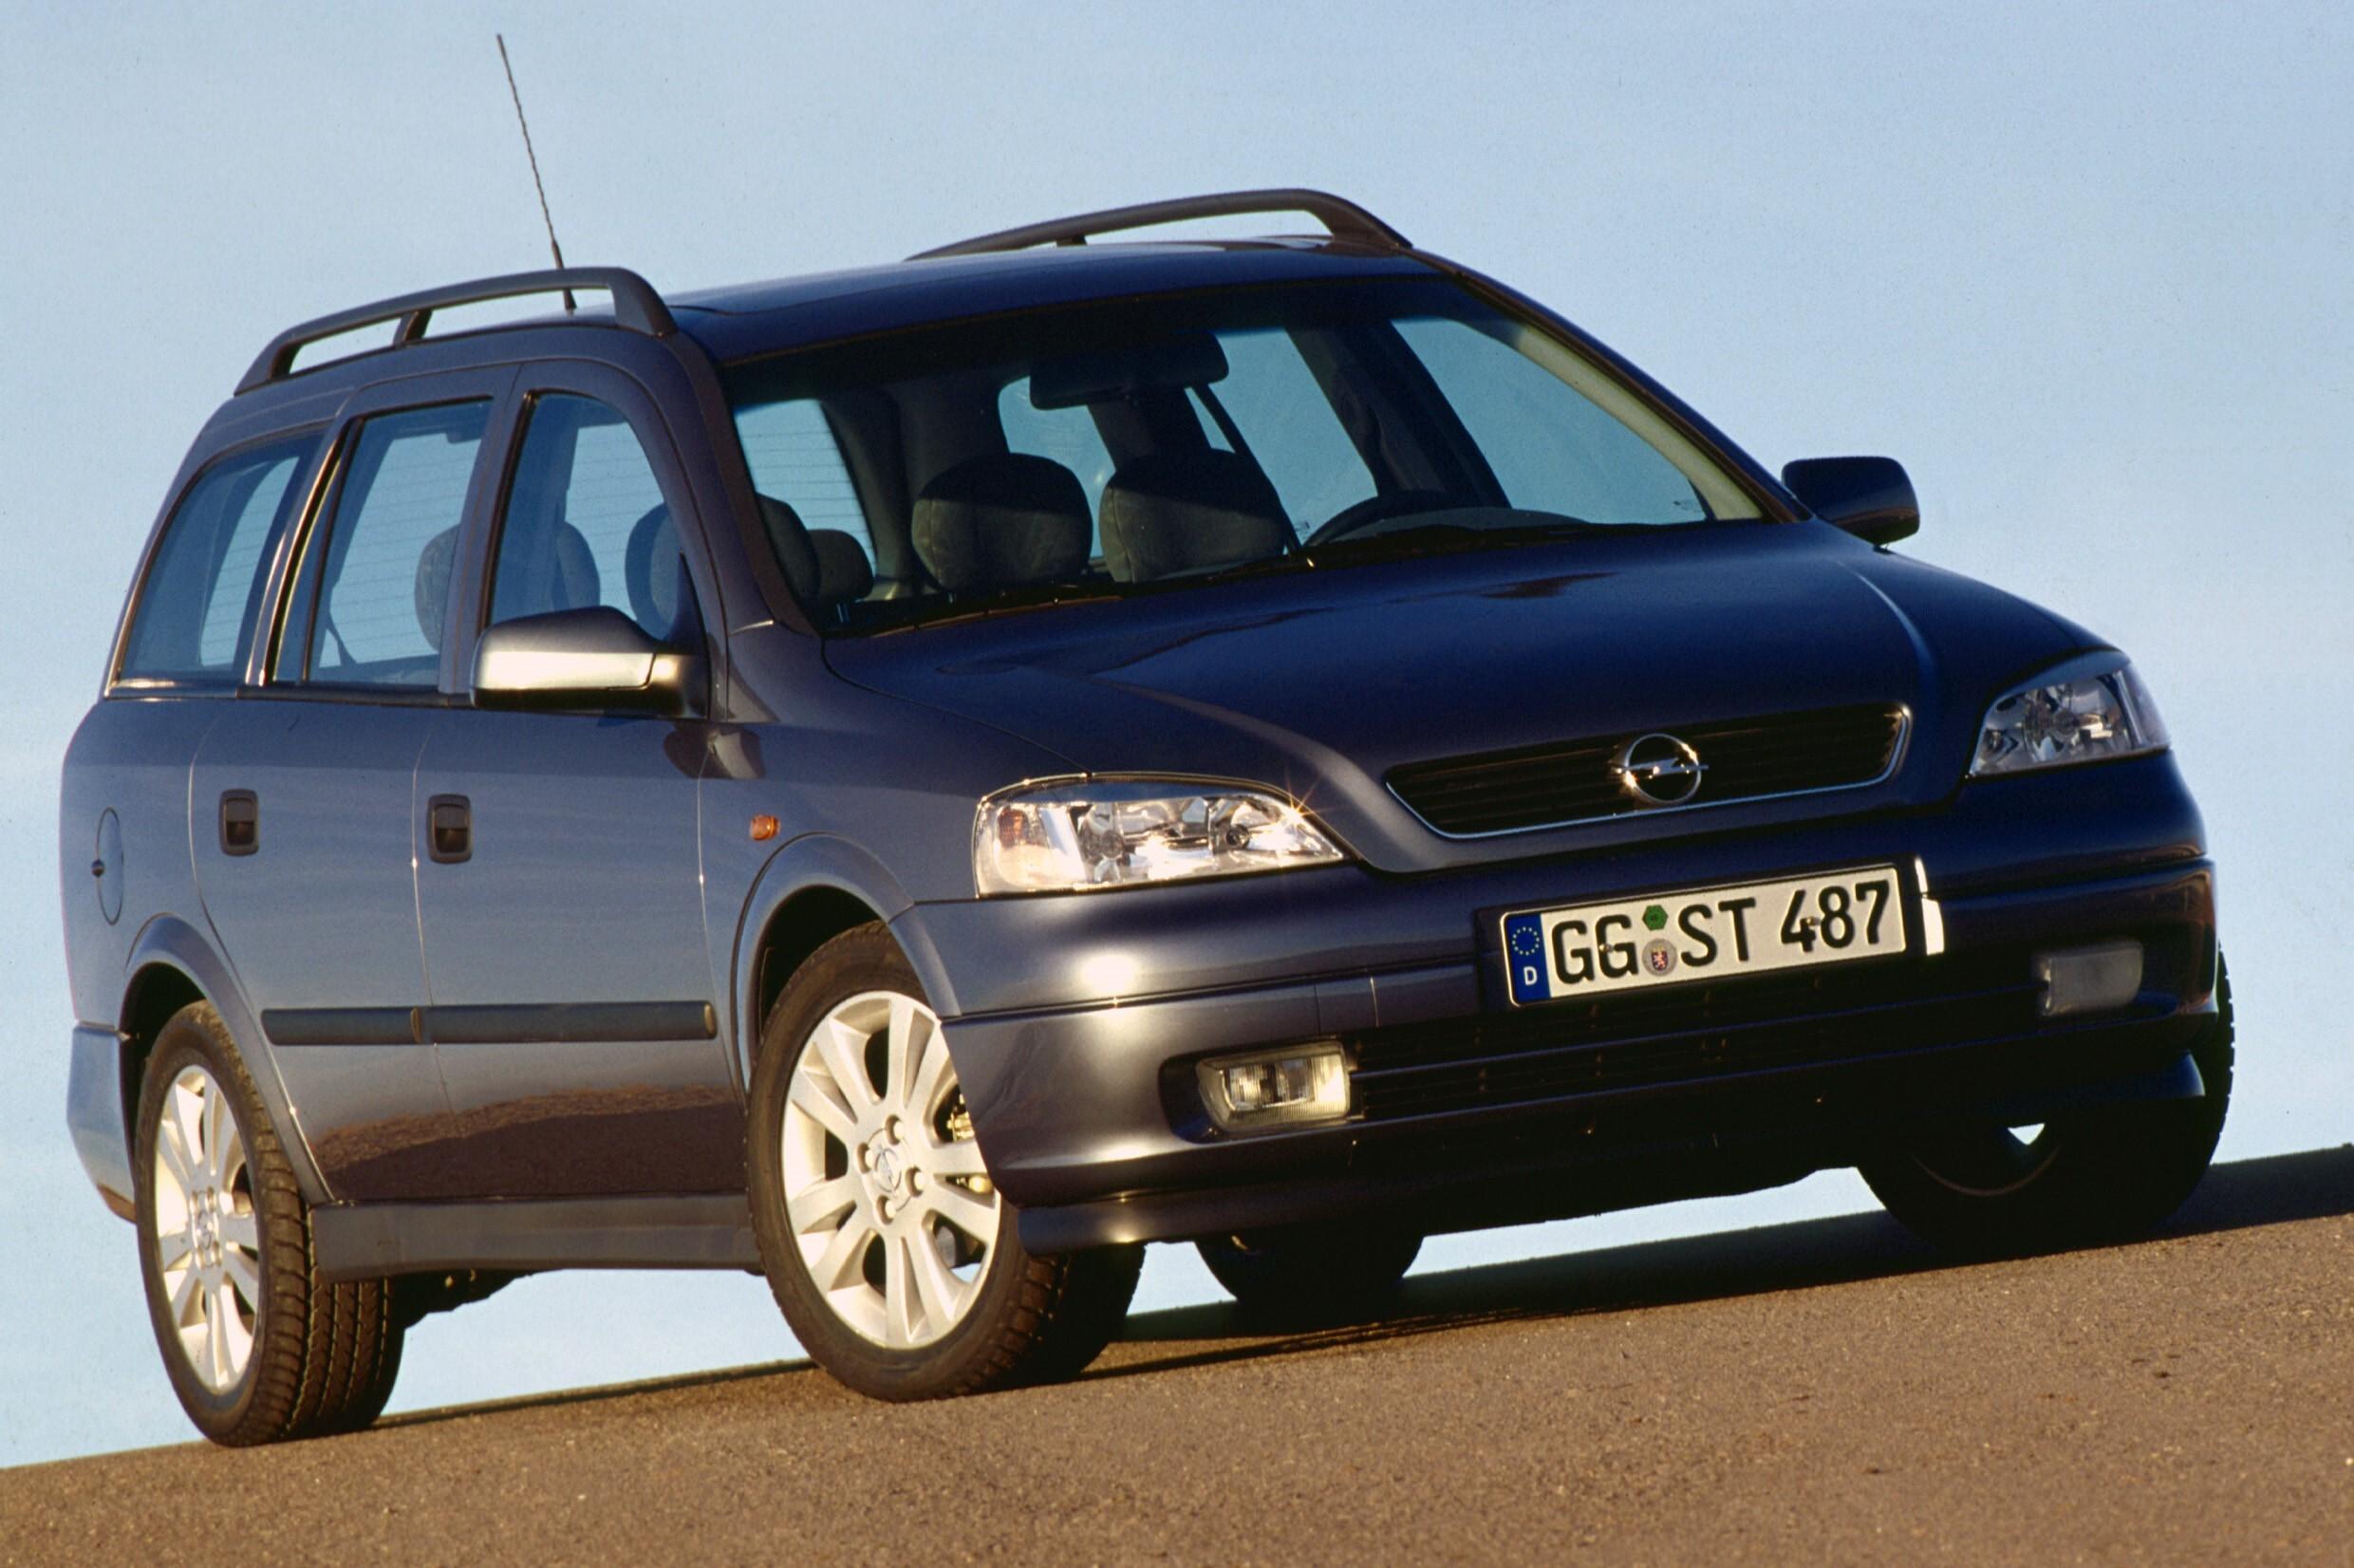 Джи караван. Opel Astra g Caravan. Opel Astra Caravan 1998. Opel Astra g Caravan 1998. Opel Astra g Caravan 2004.